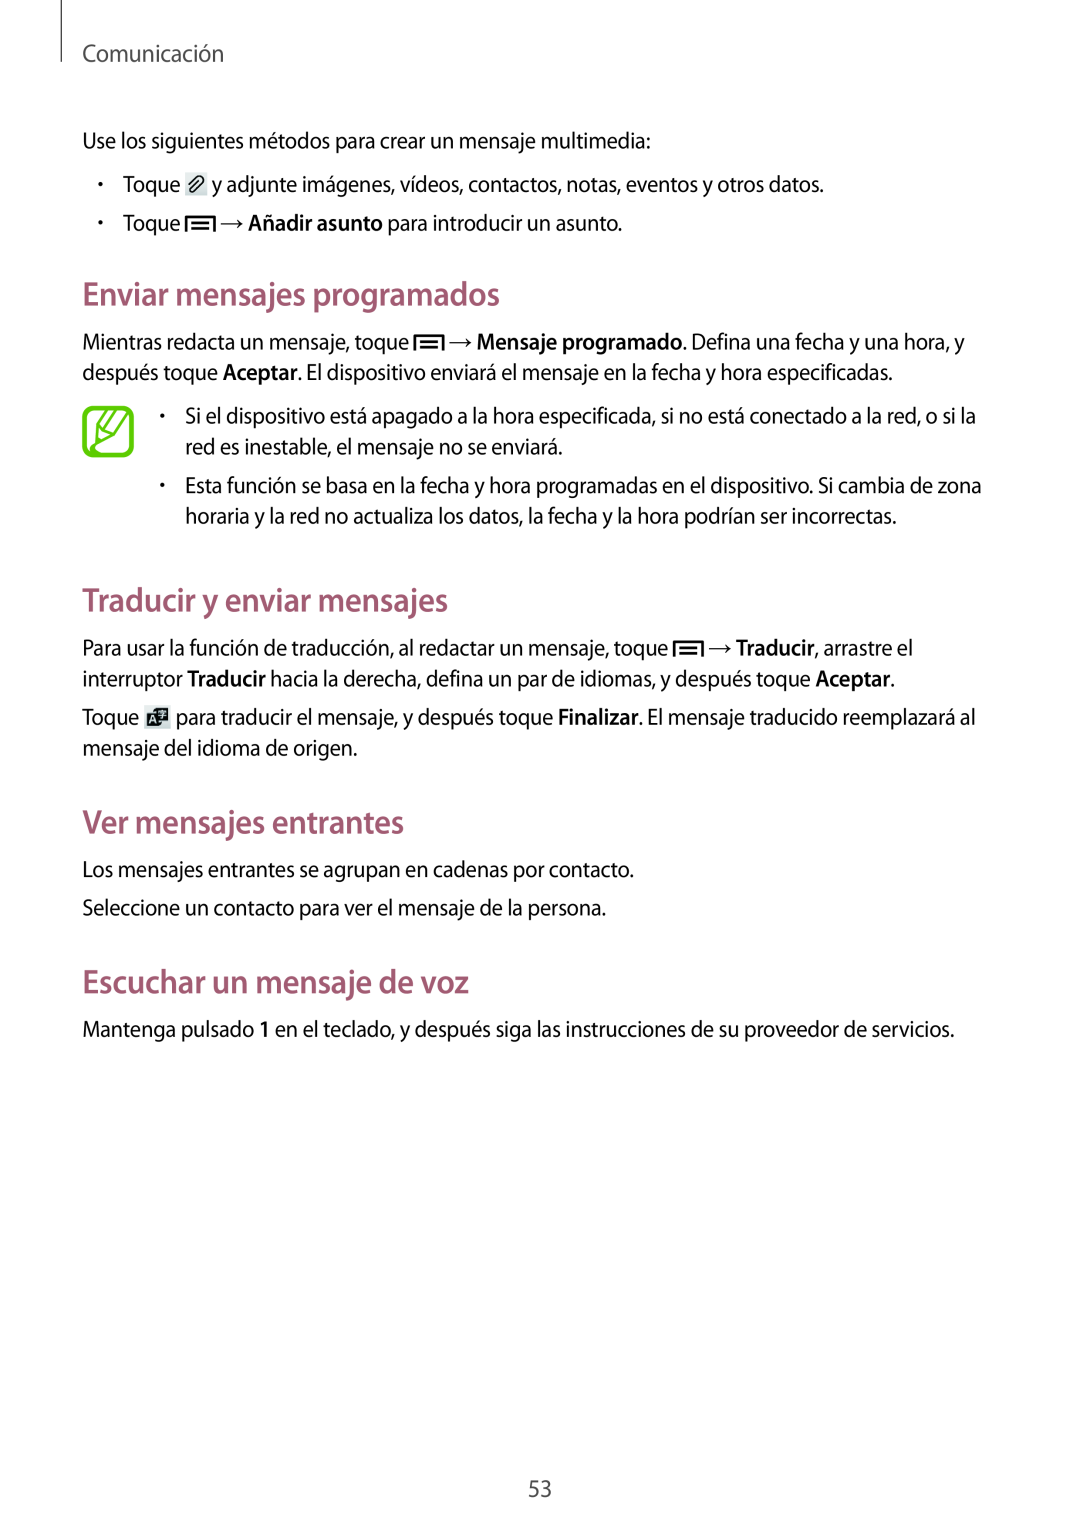 Samsung GT-I9195ZWASEB manual Enviar mensajes programados, Traducir y enviar mensajes, Ver mensajes entrantes, Comunicación 